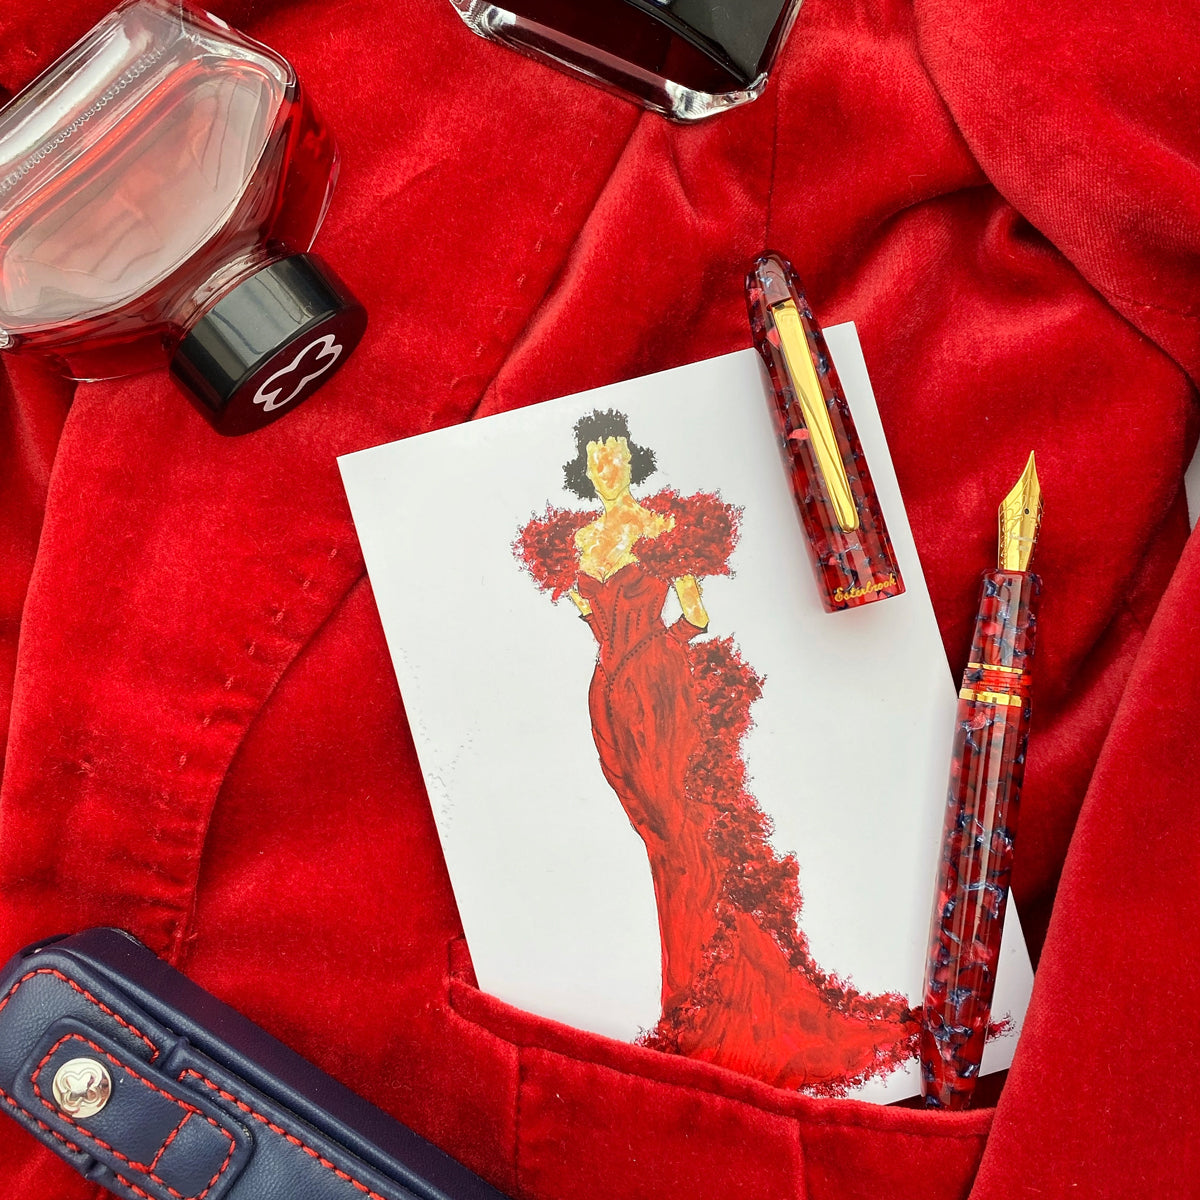 Penna stilografica Estie Oversize Scarlet con finiture in oro - Pennino Gena Journaler personalizzato